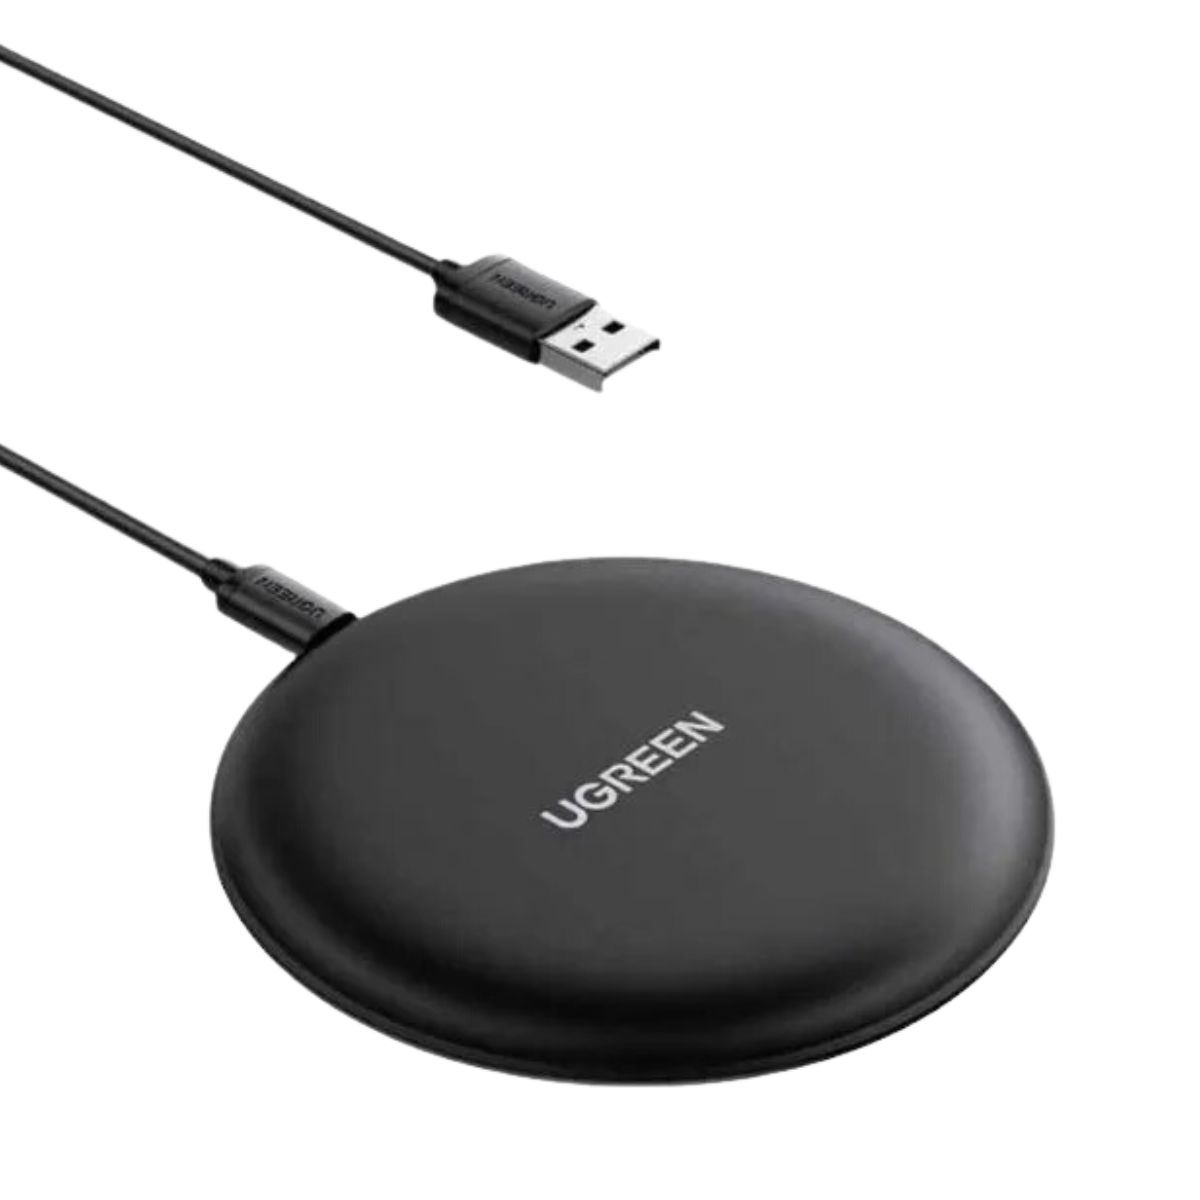 Sạc không dây thông minh USB-C Ugreen 15112 CD186 màu đen, đèn báo LED